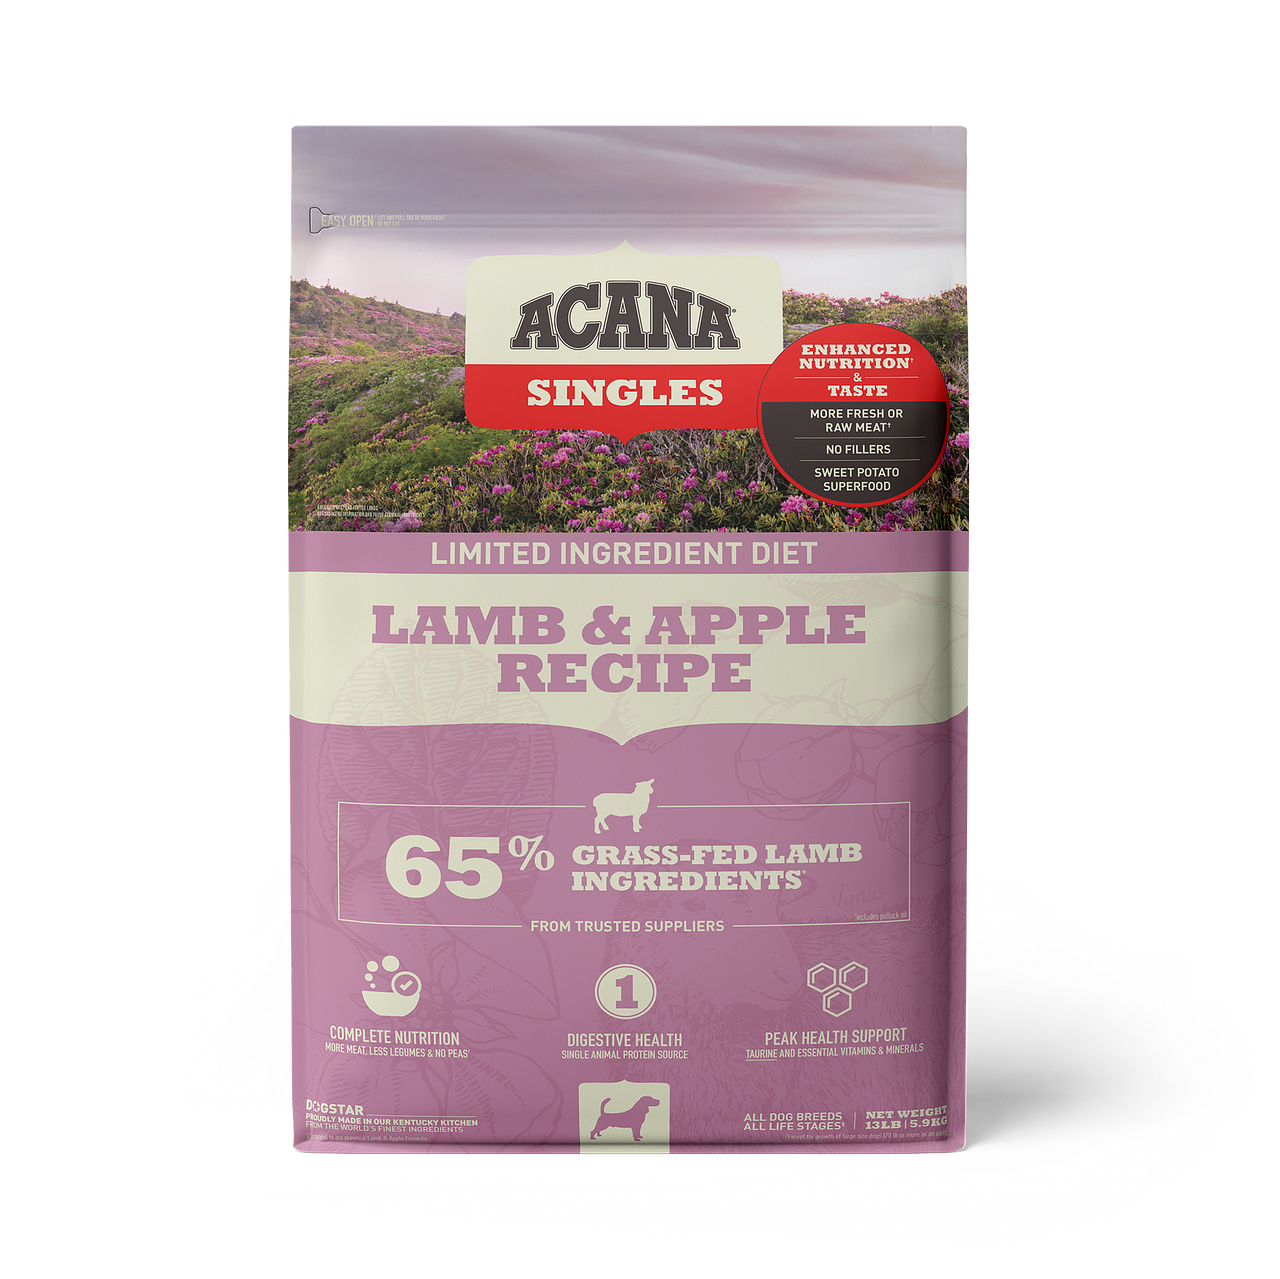 Acana Singles Lamb & Apple